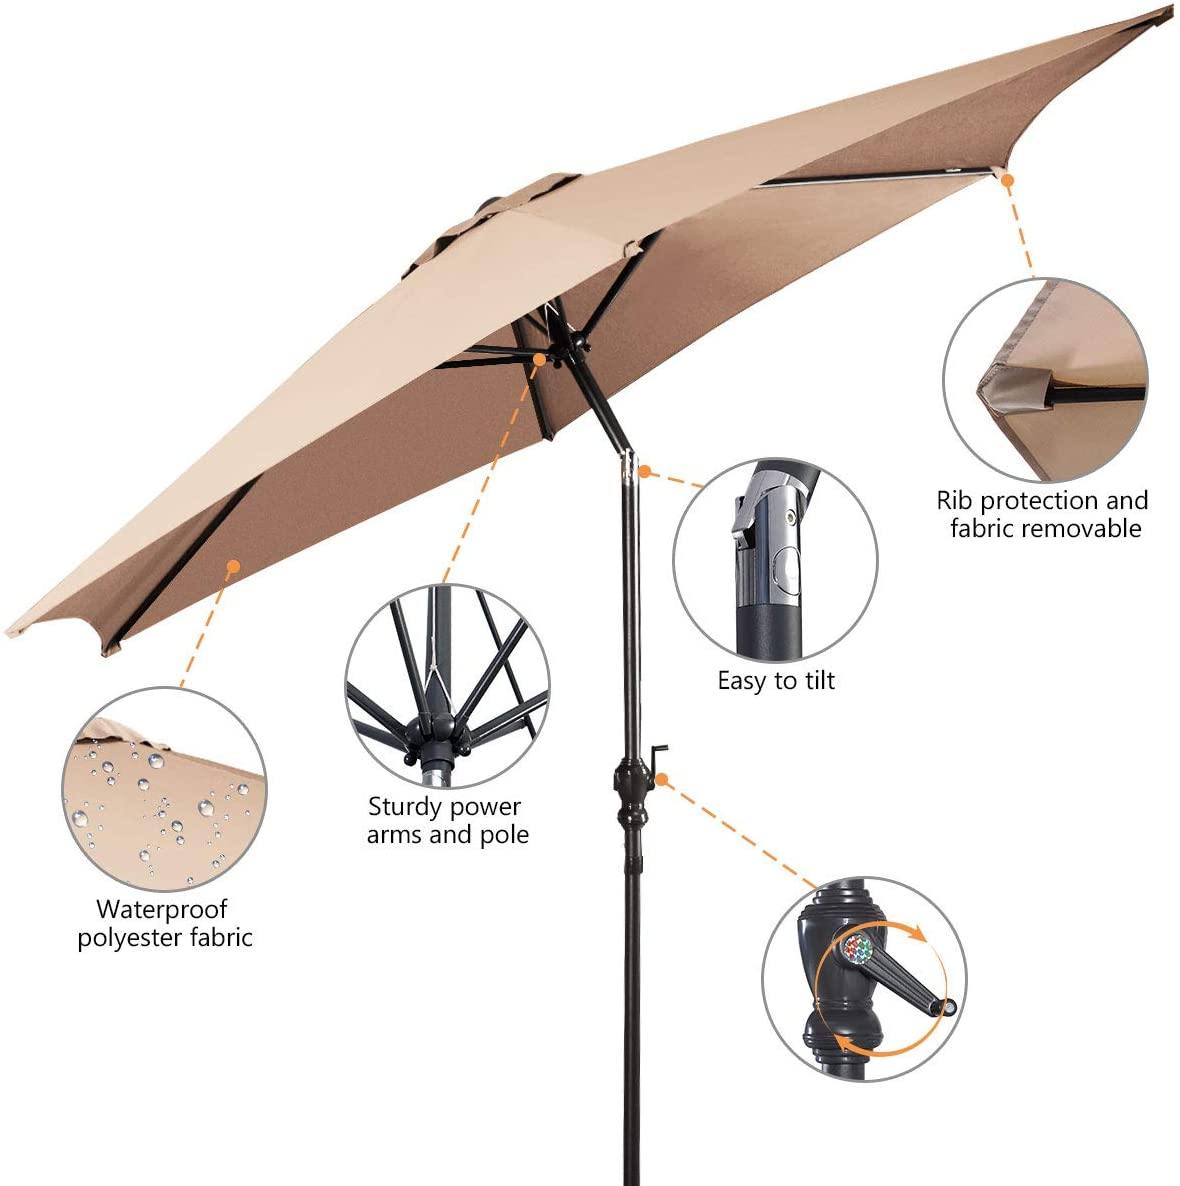 Giantex 9ft Patio Umbrella Outdoor, Market Table Umbrella w/ Push Button Tilt and Crank - Giantexus